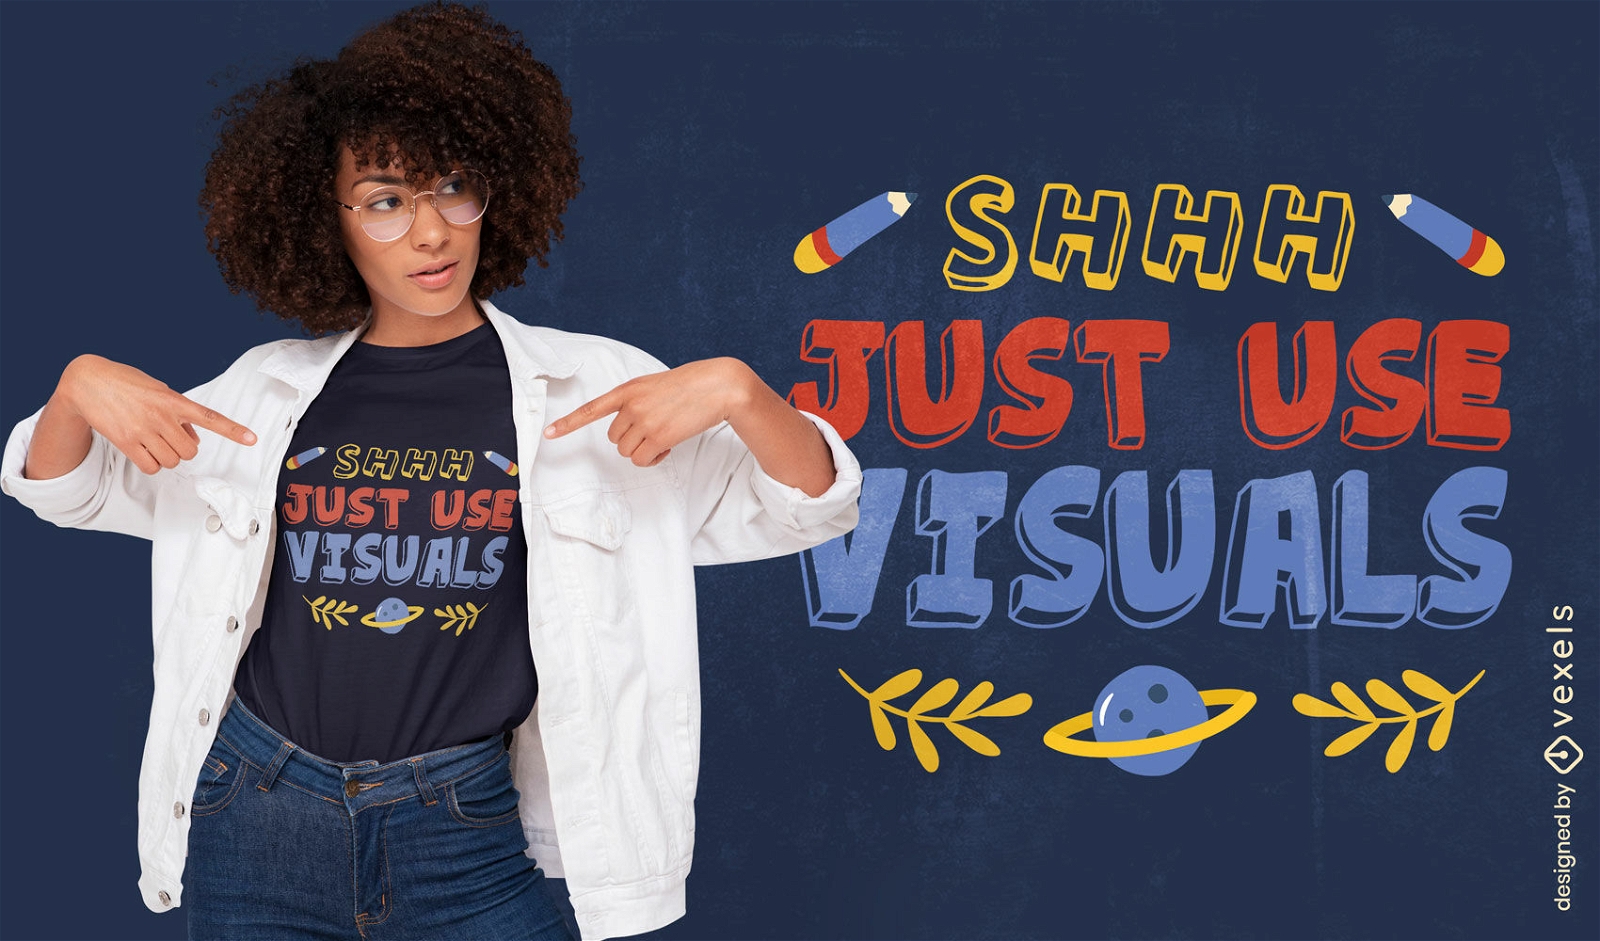  Just use visuals teacher t-shirt design